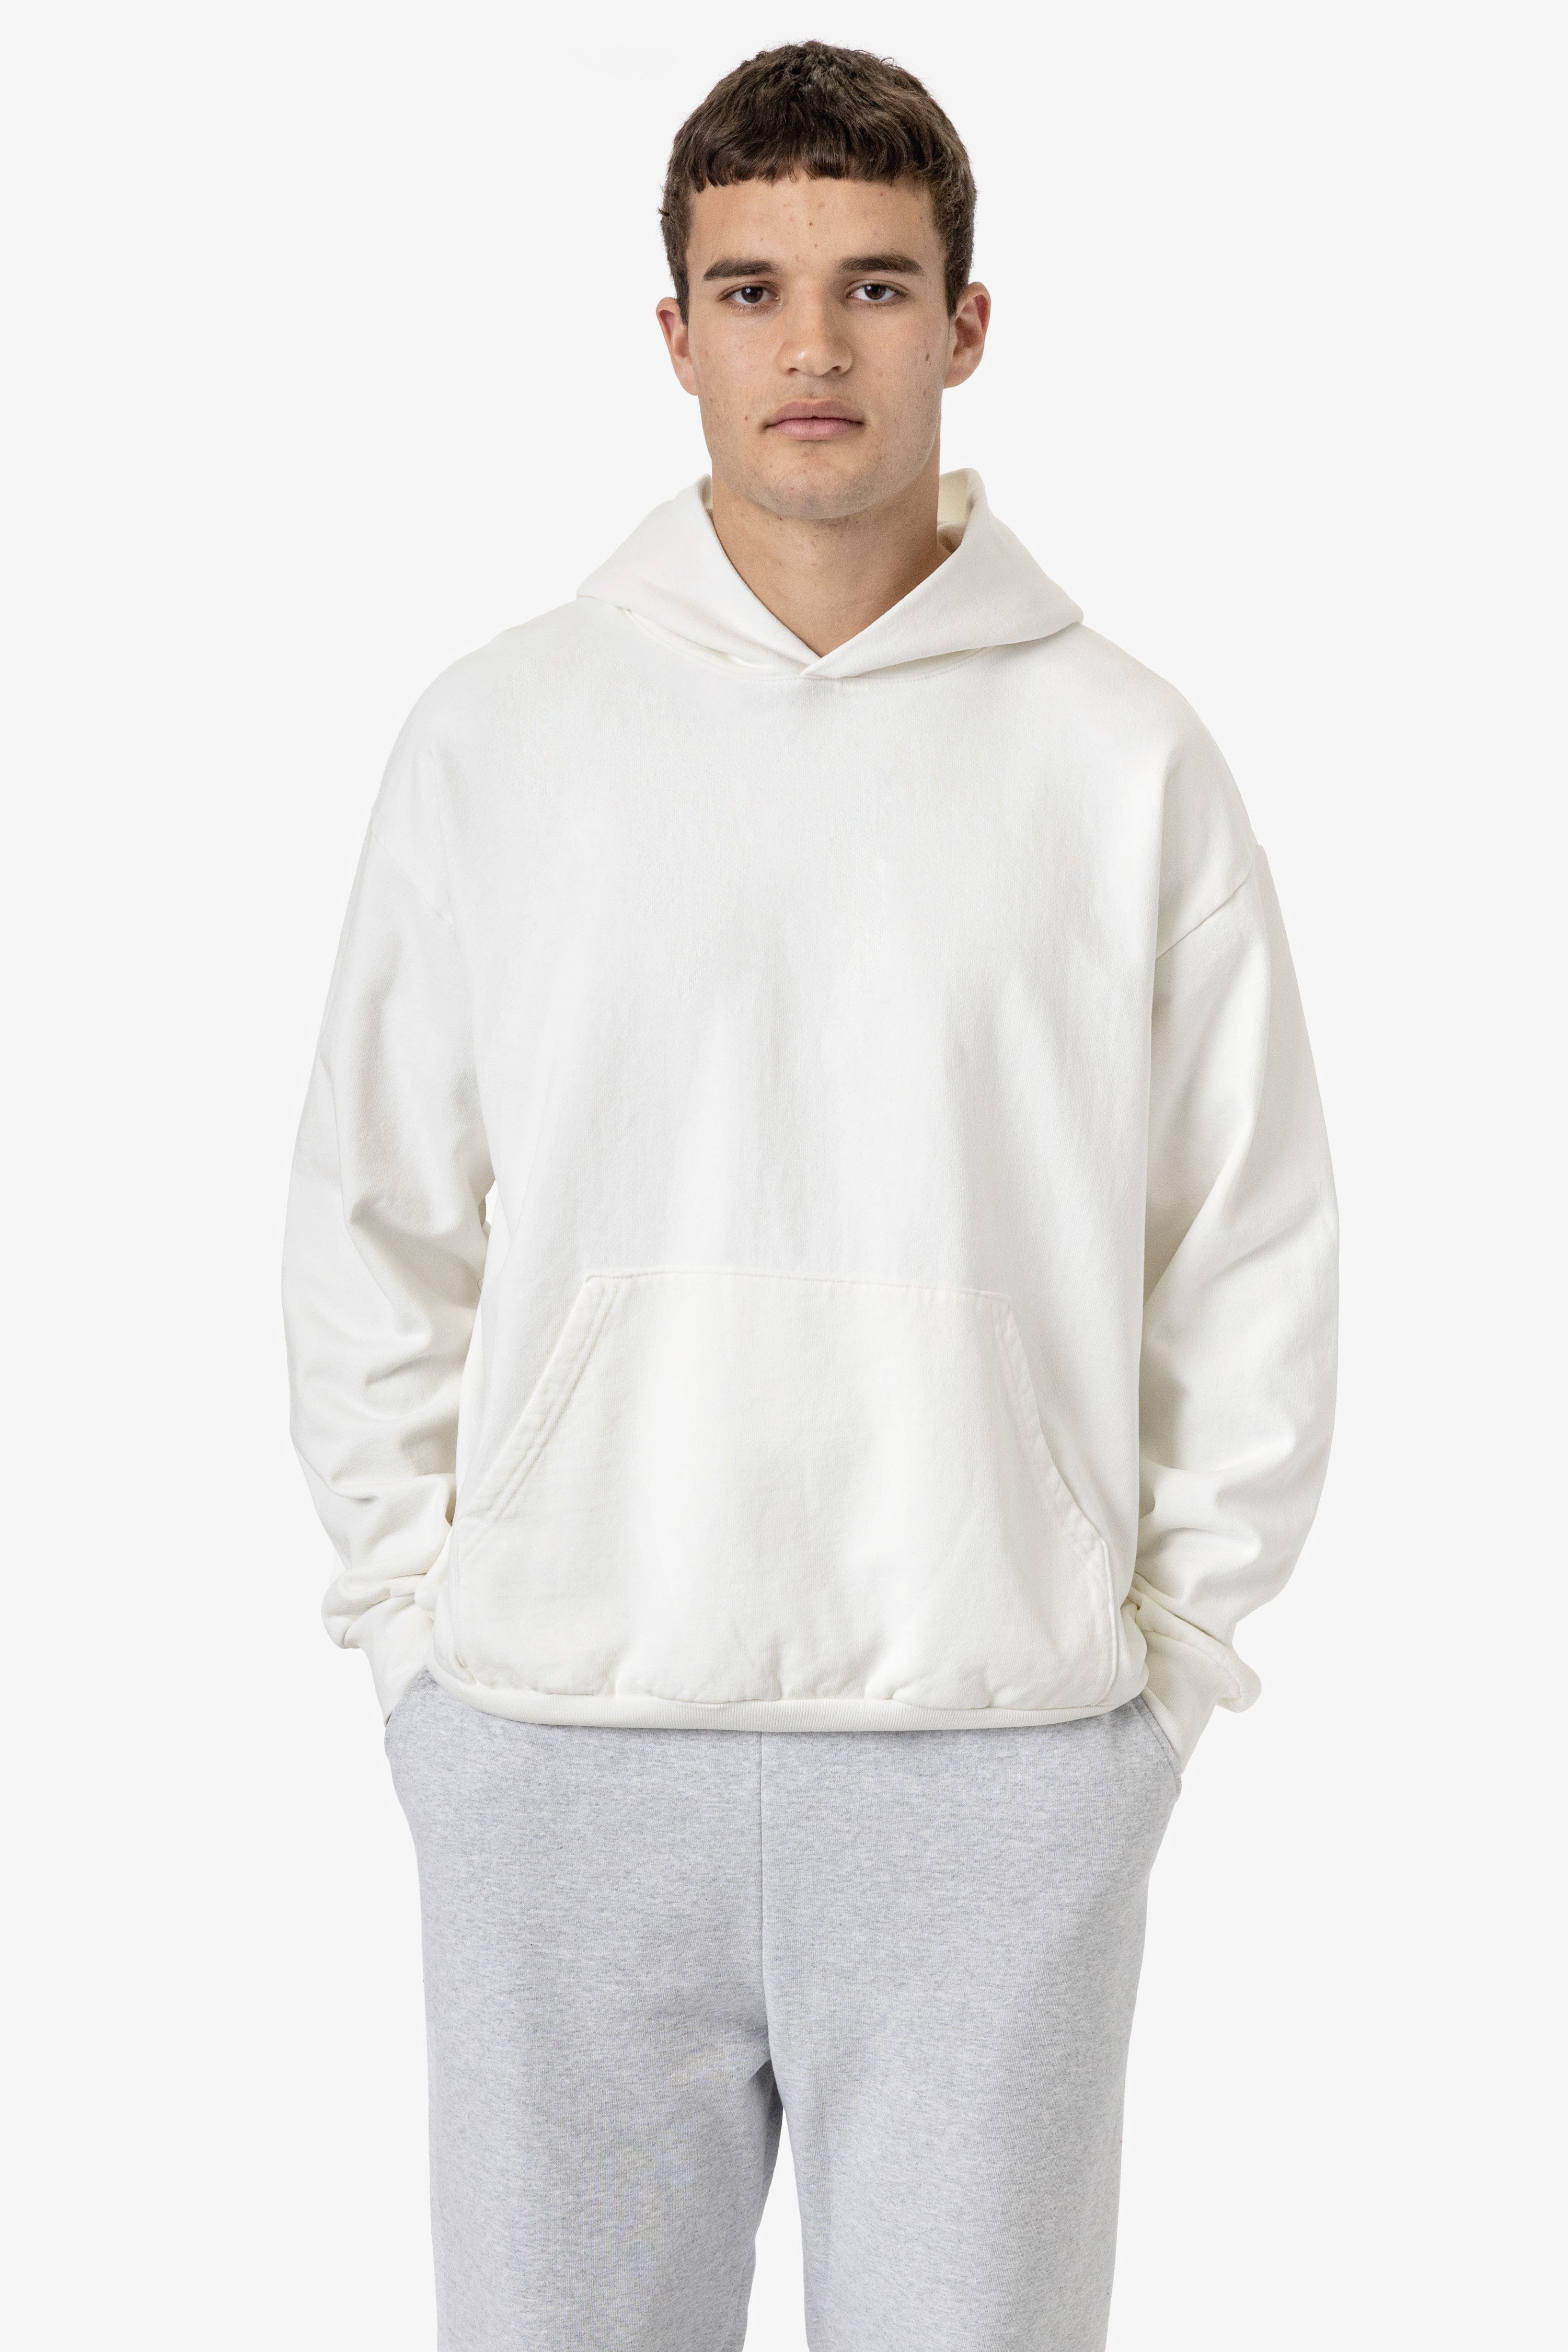 HF09GD - Garment Dye 14oz. Heavy Fleece Hooded Pullover Sweatshirt ...